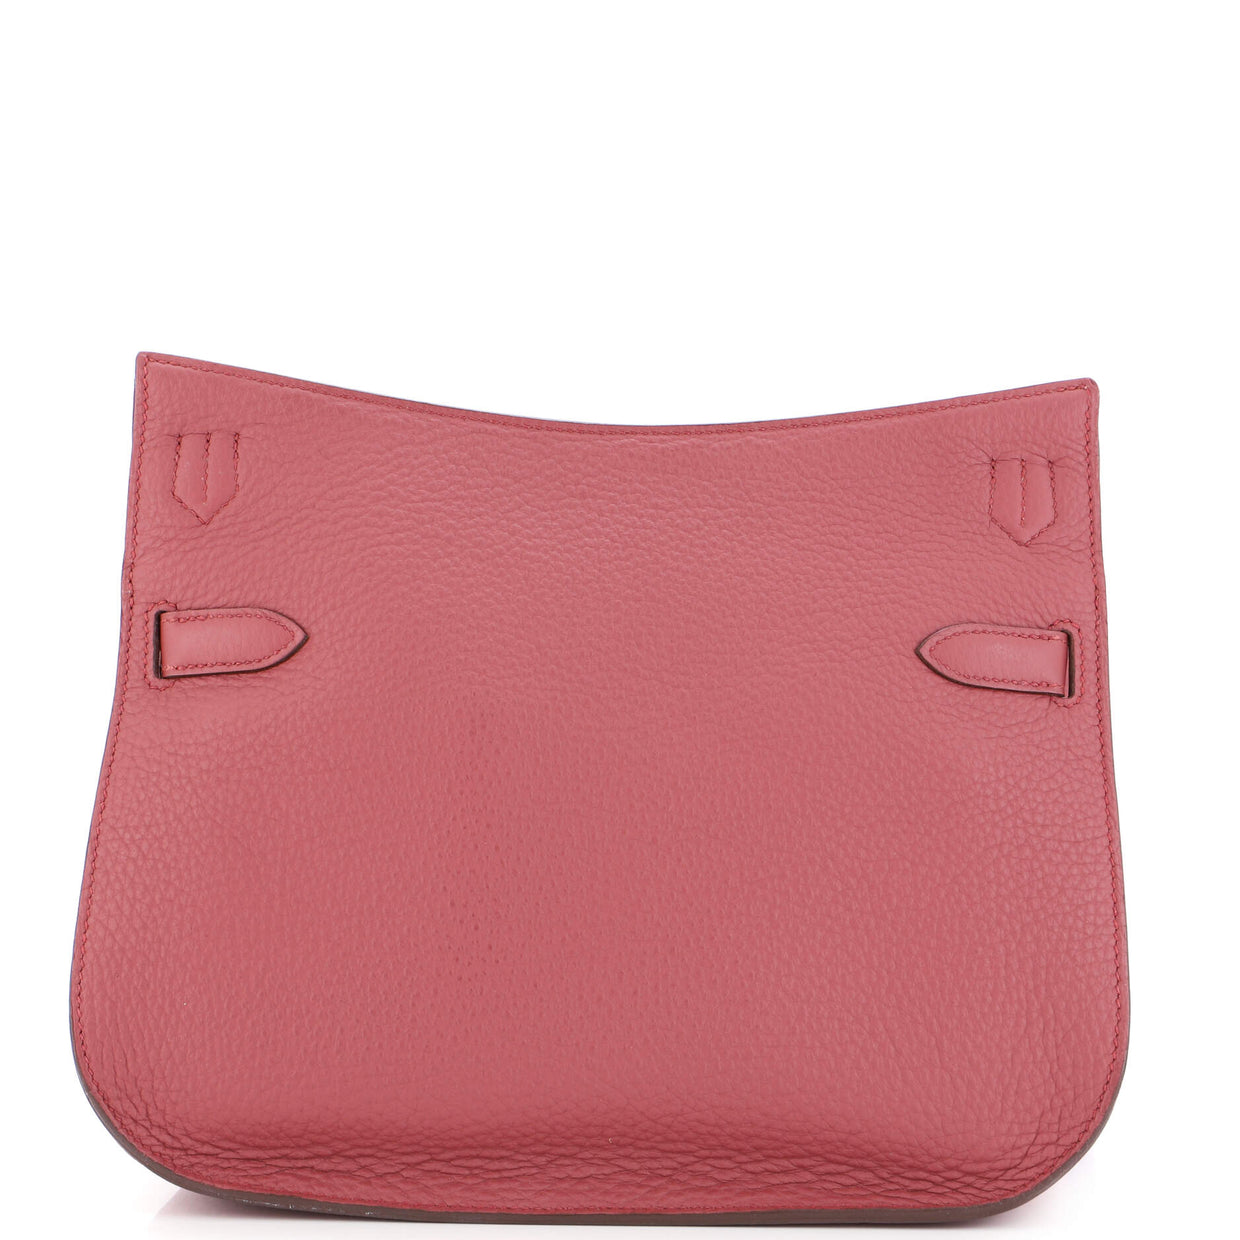 Hermes Jypsiere Bag Clemence 28 Pink 20748119